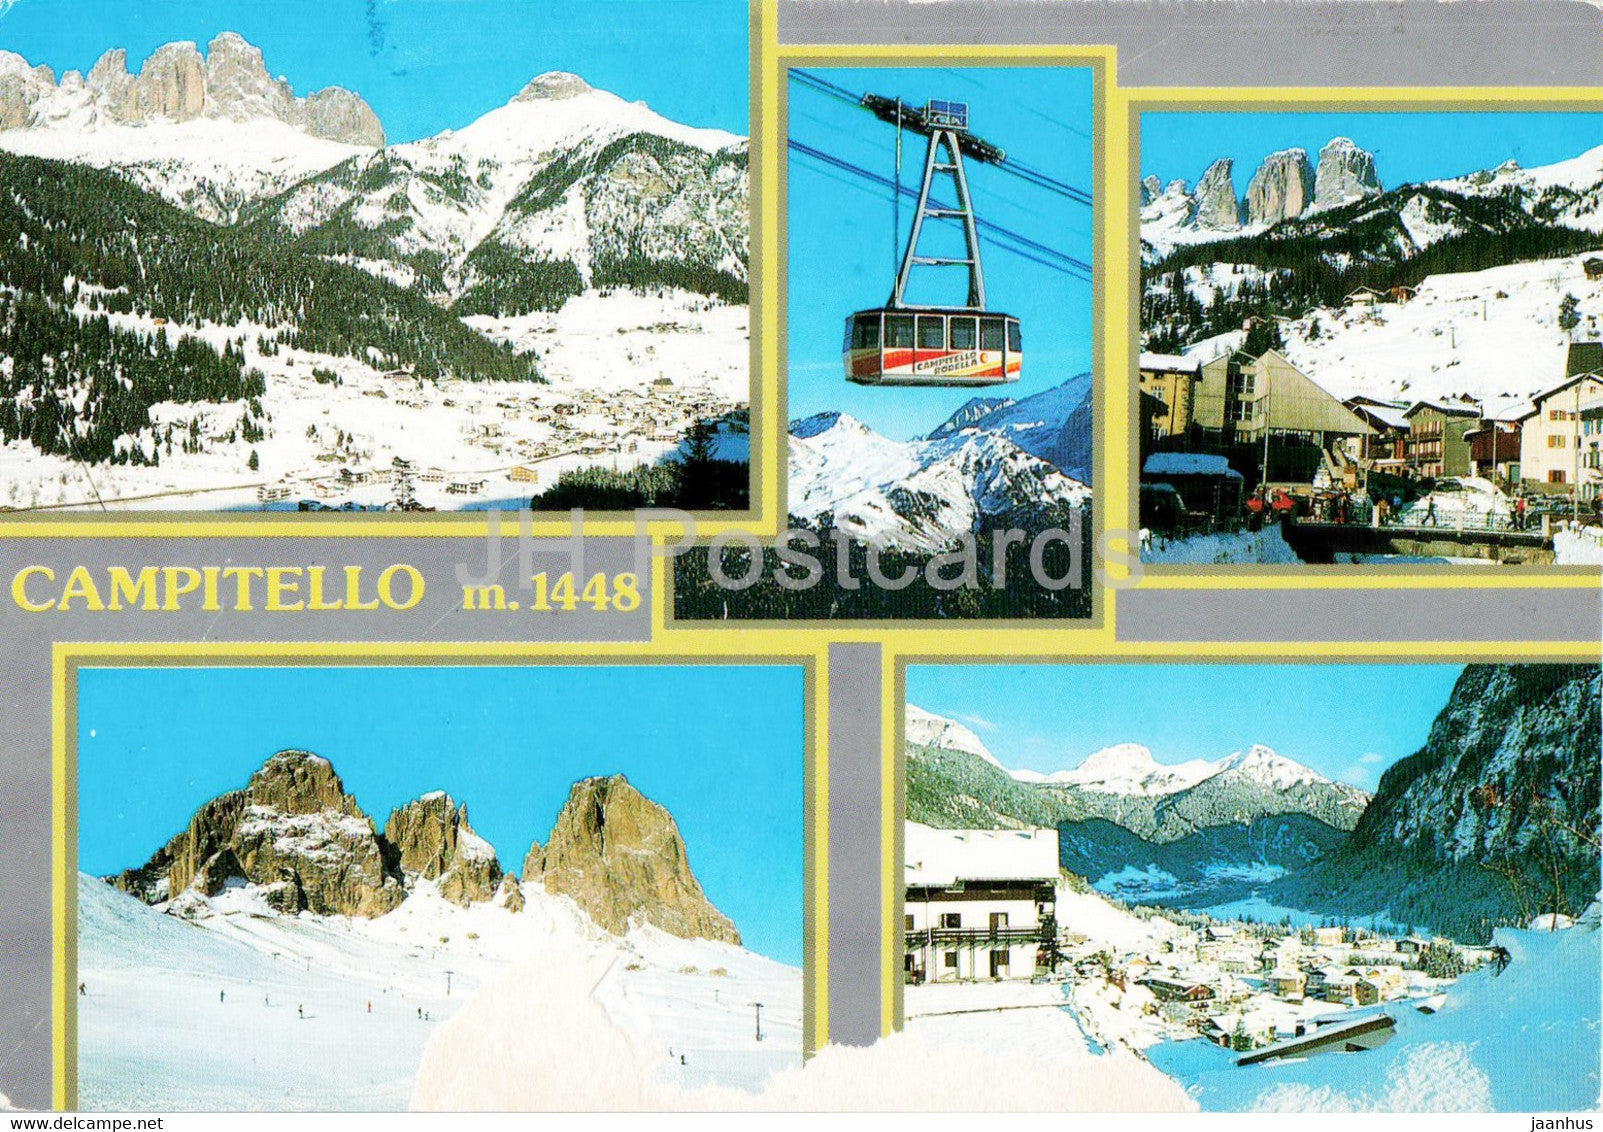 Dolomiti Val di Fassa - Campitello - cable car - 2001 - Italy - used - JH Postcards